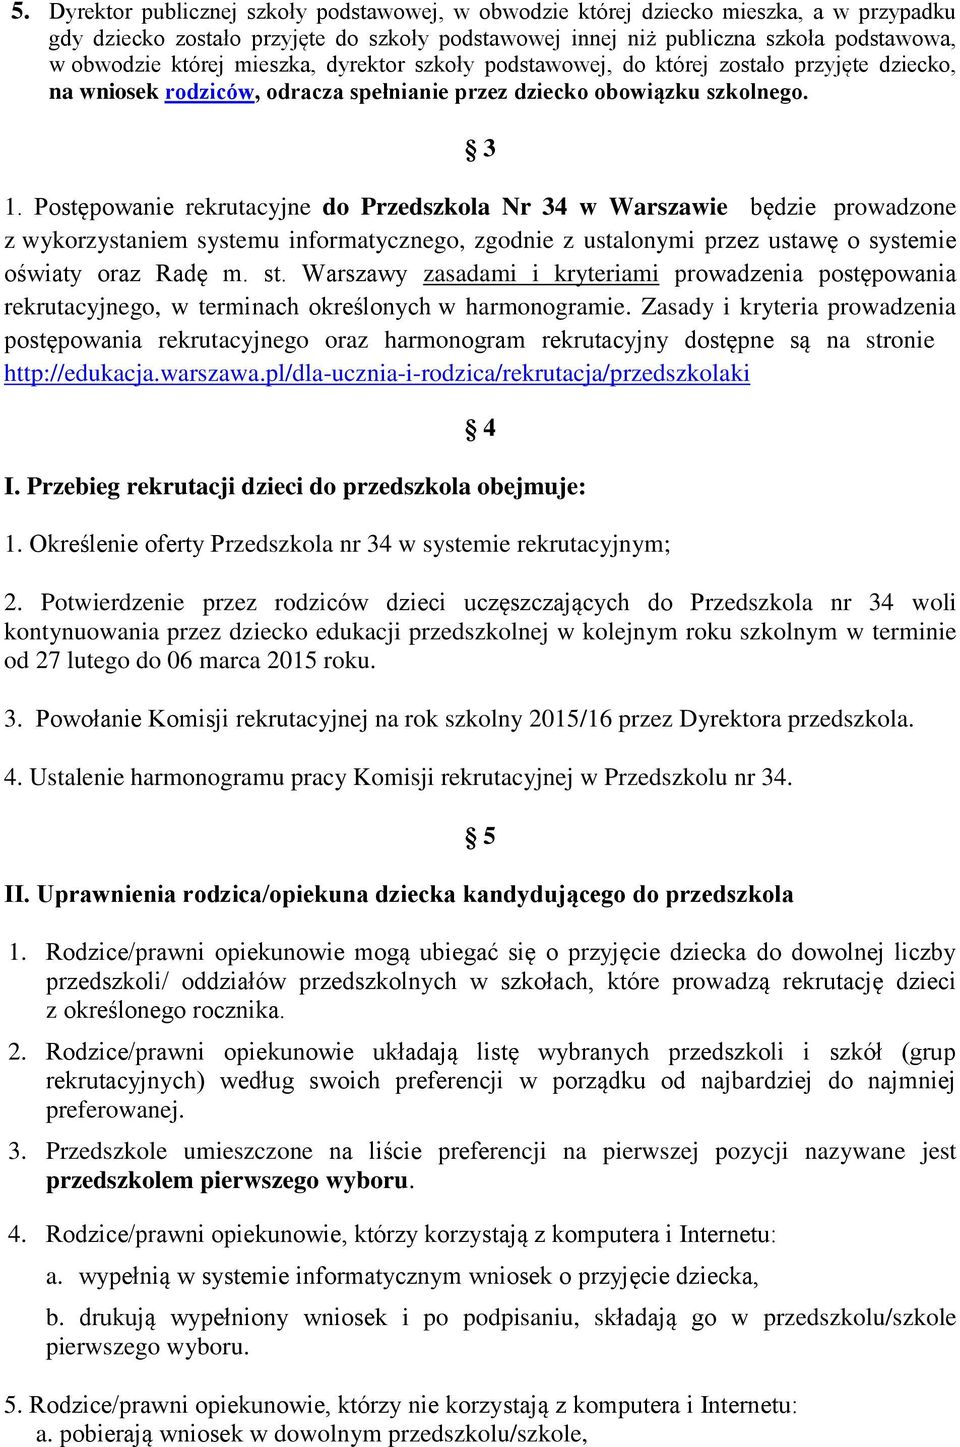 Postępowanie rekrutacyjne do Przedszkola Nr 34 w Warszawie będzie prowadzone z wykorzystaniem systemu informatycznego, zgodnie z ustalonymi przez ustawę o systemie oświaty oraz Radę m. st.